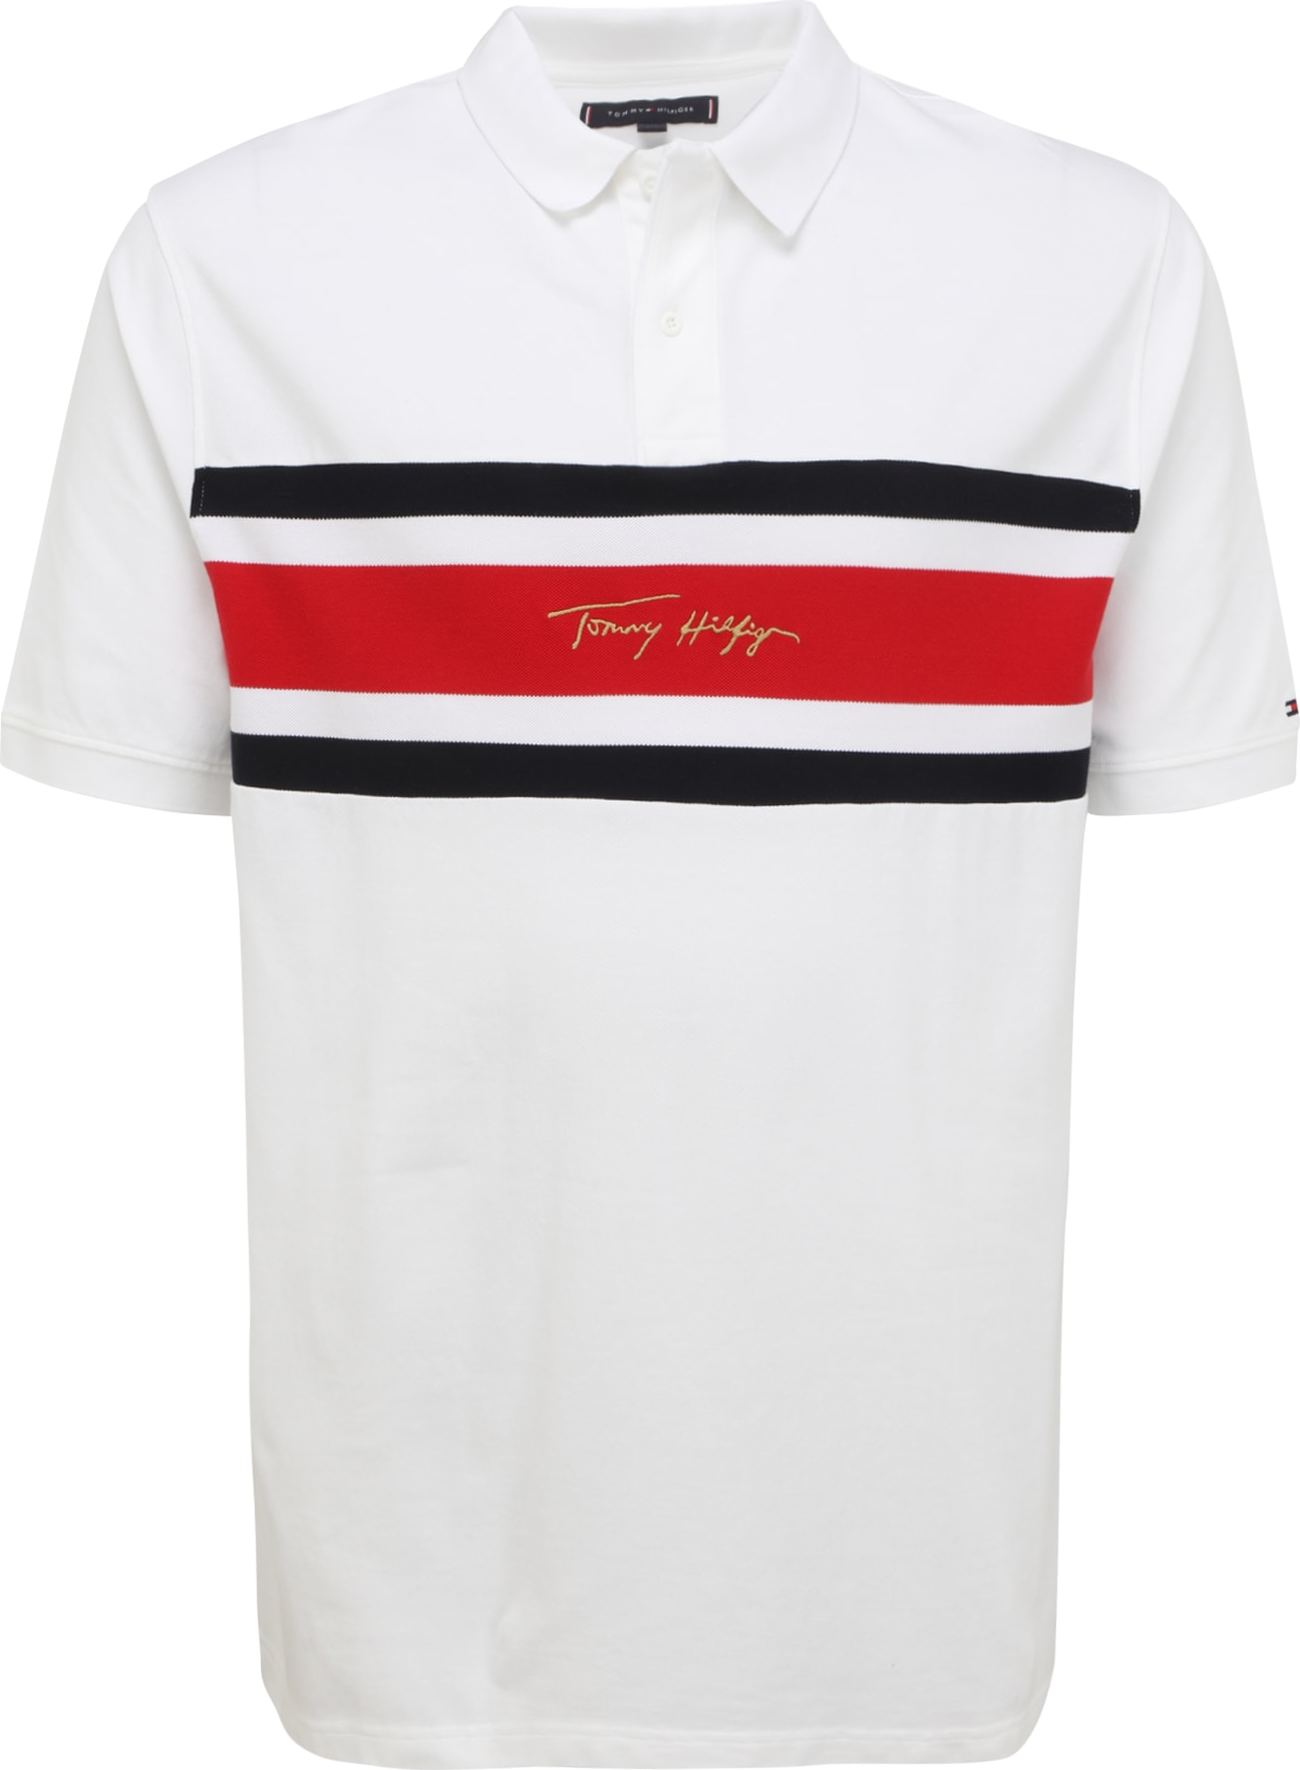 Tričko Tommy Hilfiger Big & Tall námořnická modř / červená / bílá